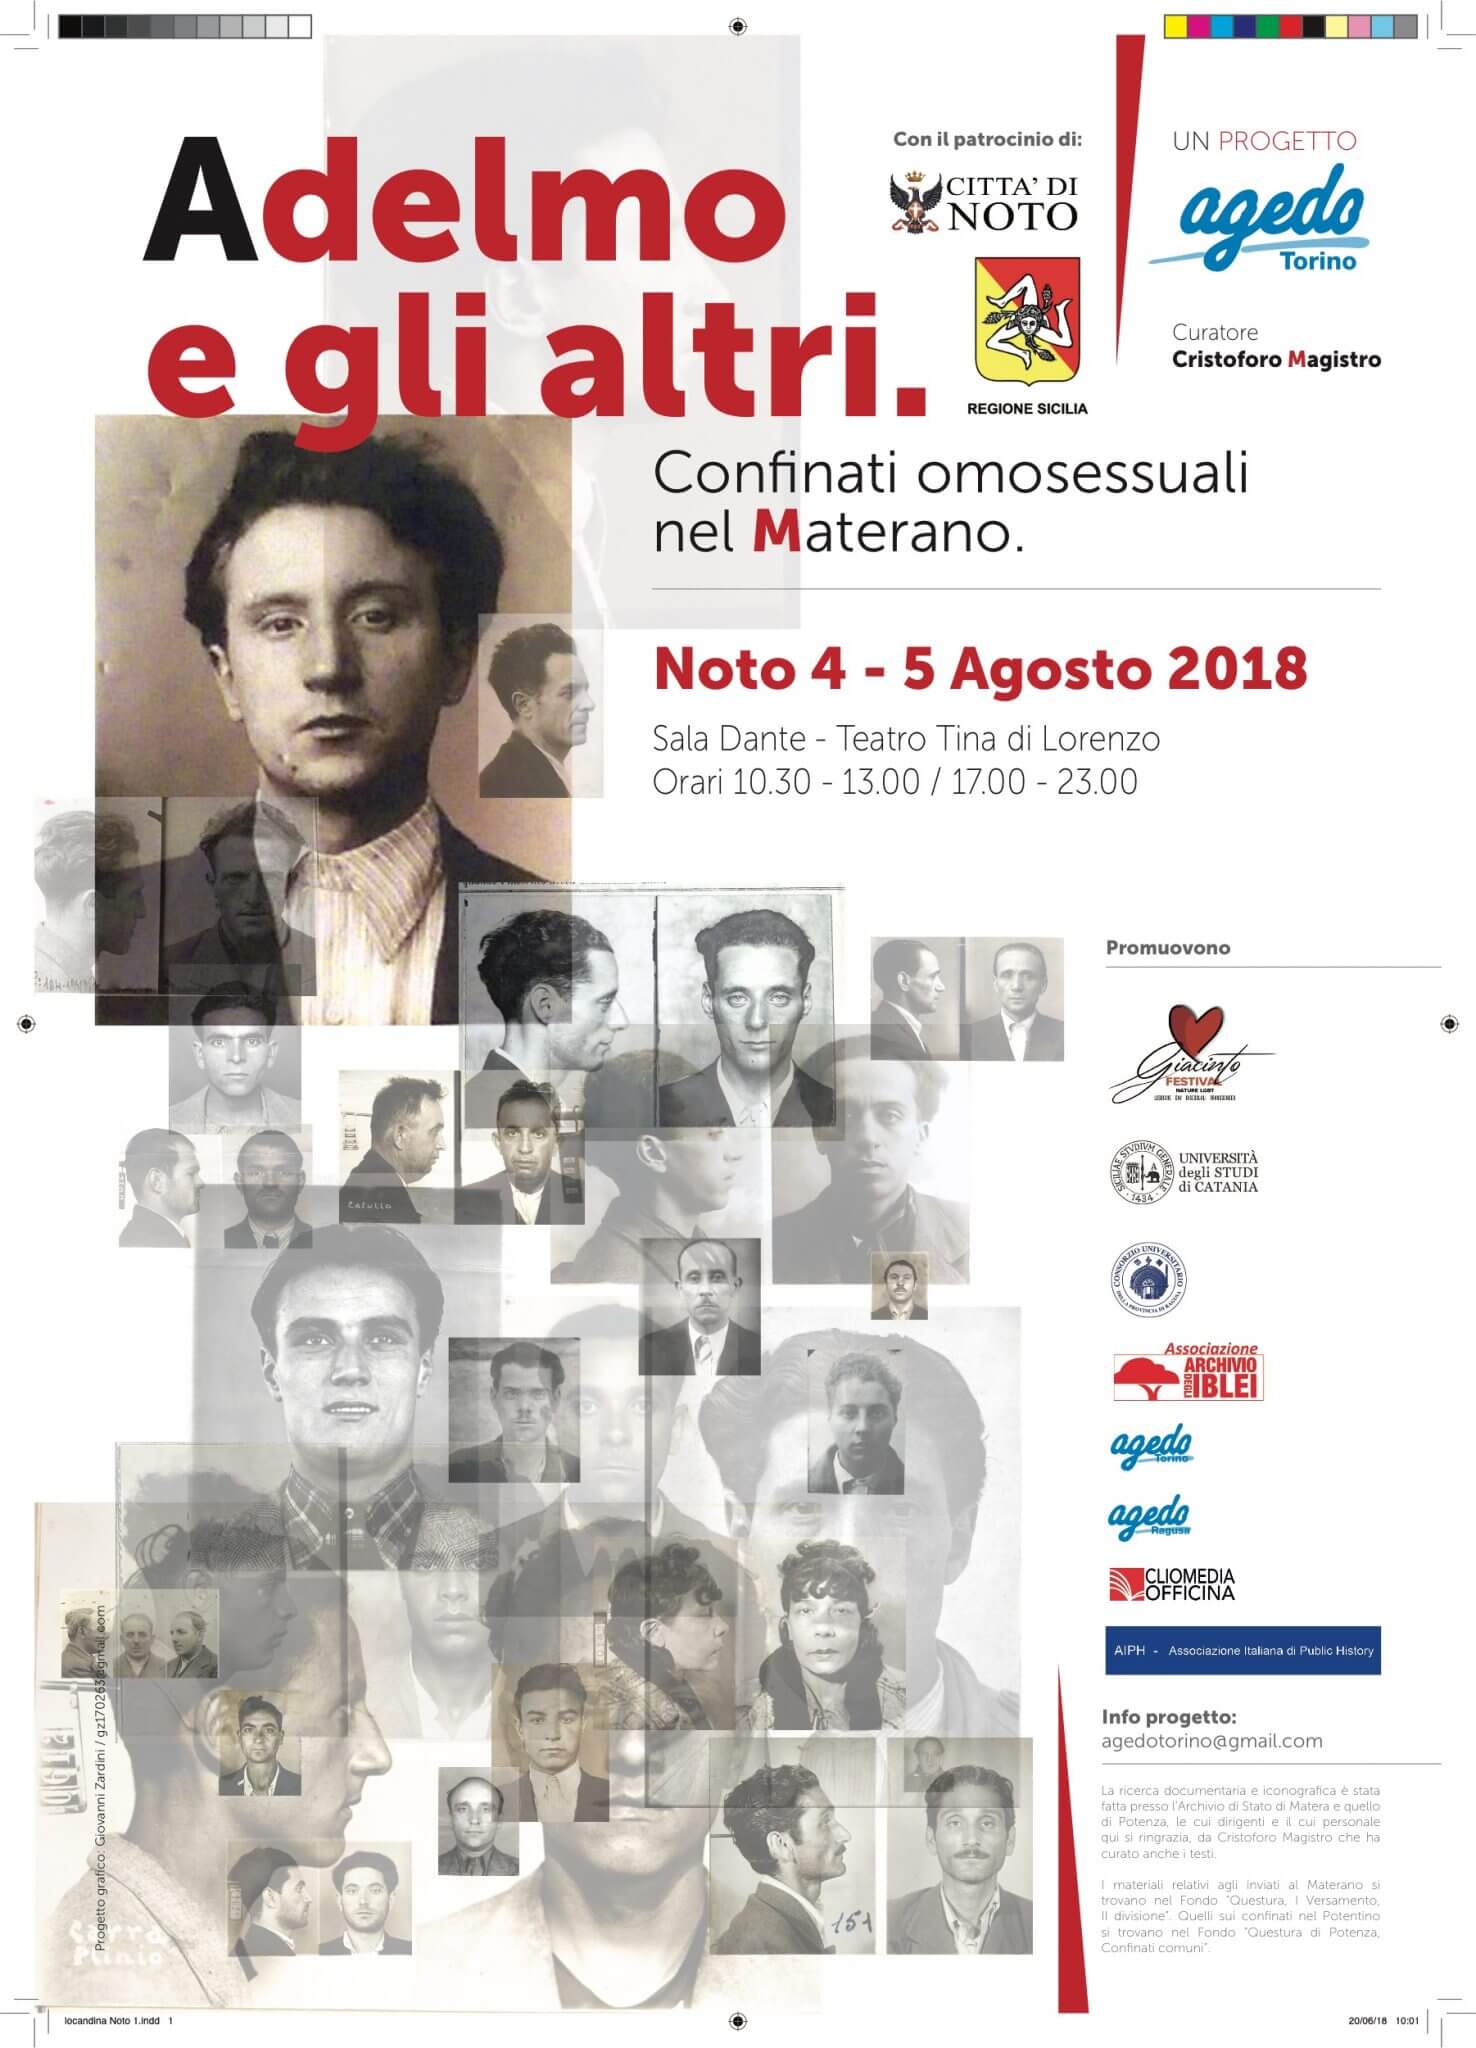 Giacinto-Nature LGBT, il programma della 4° edizione - ospiti Alda D'Eusanio, Paolo Briguglia e Valeria Fedeli - Scaled Image 3 3 - Gay.it